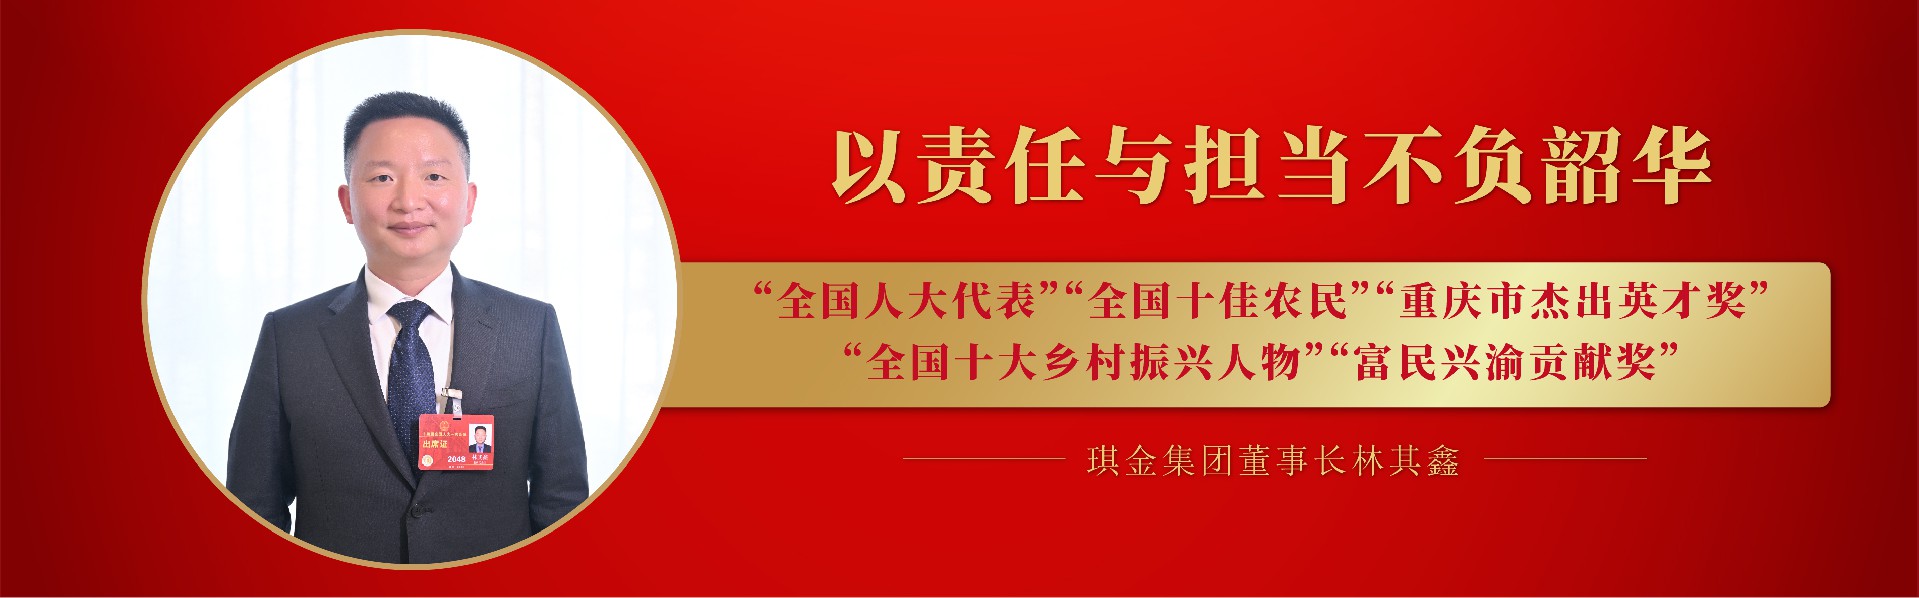 PG电子·(中国)官方网站董事长林其鑫获得多项荣誉